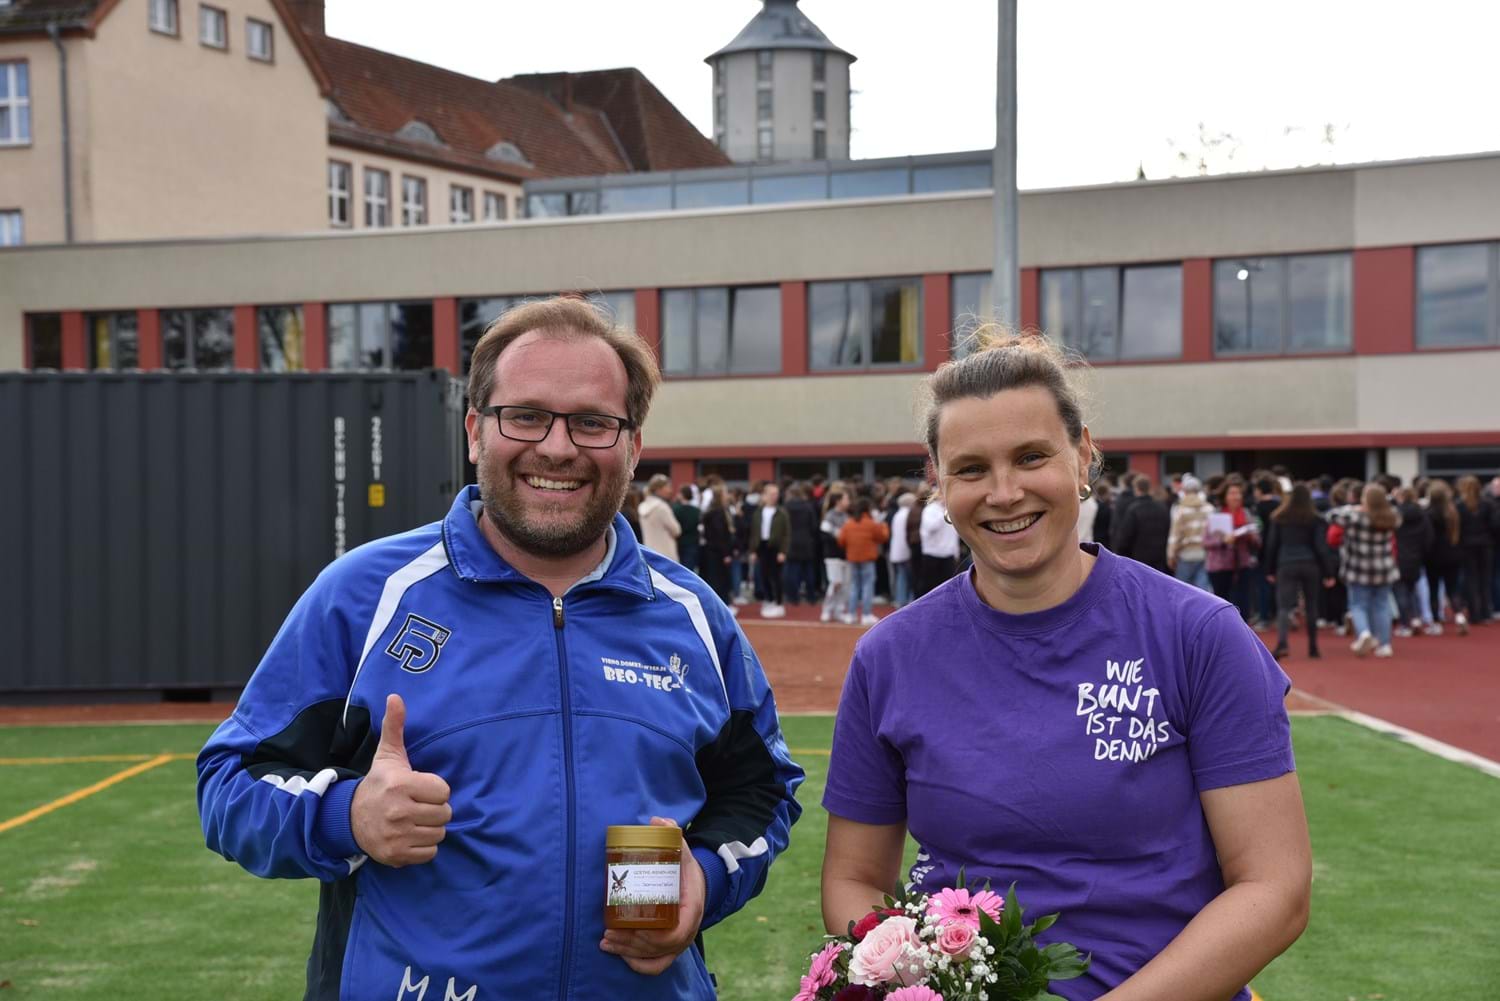 Blumen und Honig gab es schließlich nach der 200-Meter-Eröffnungsrunde für die Leichtathletin und den Bürgermeister.